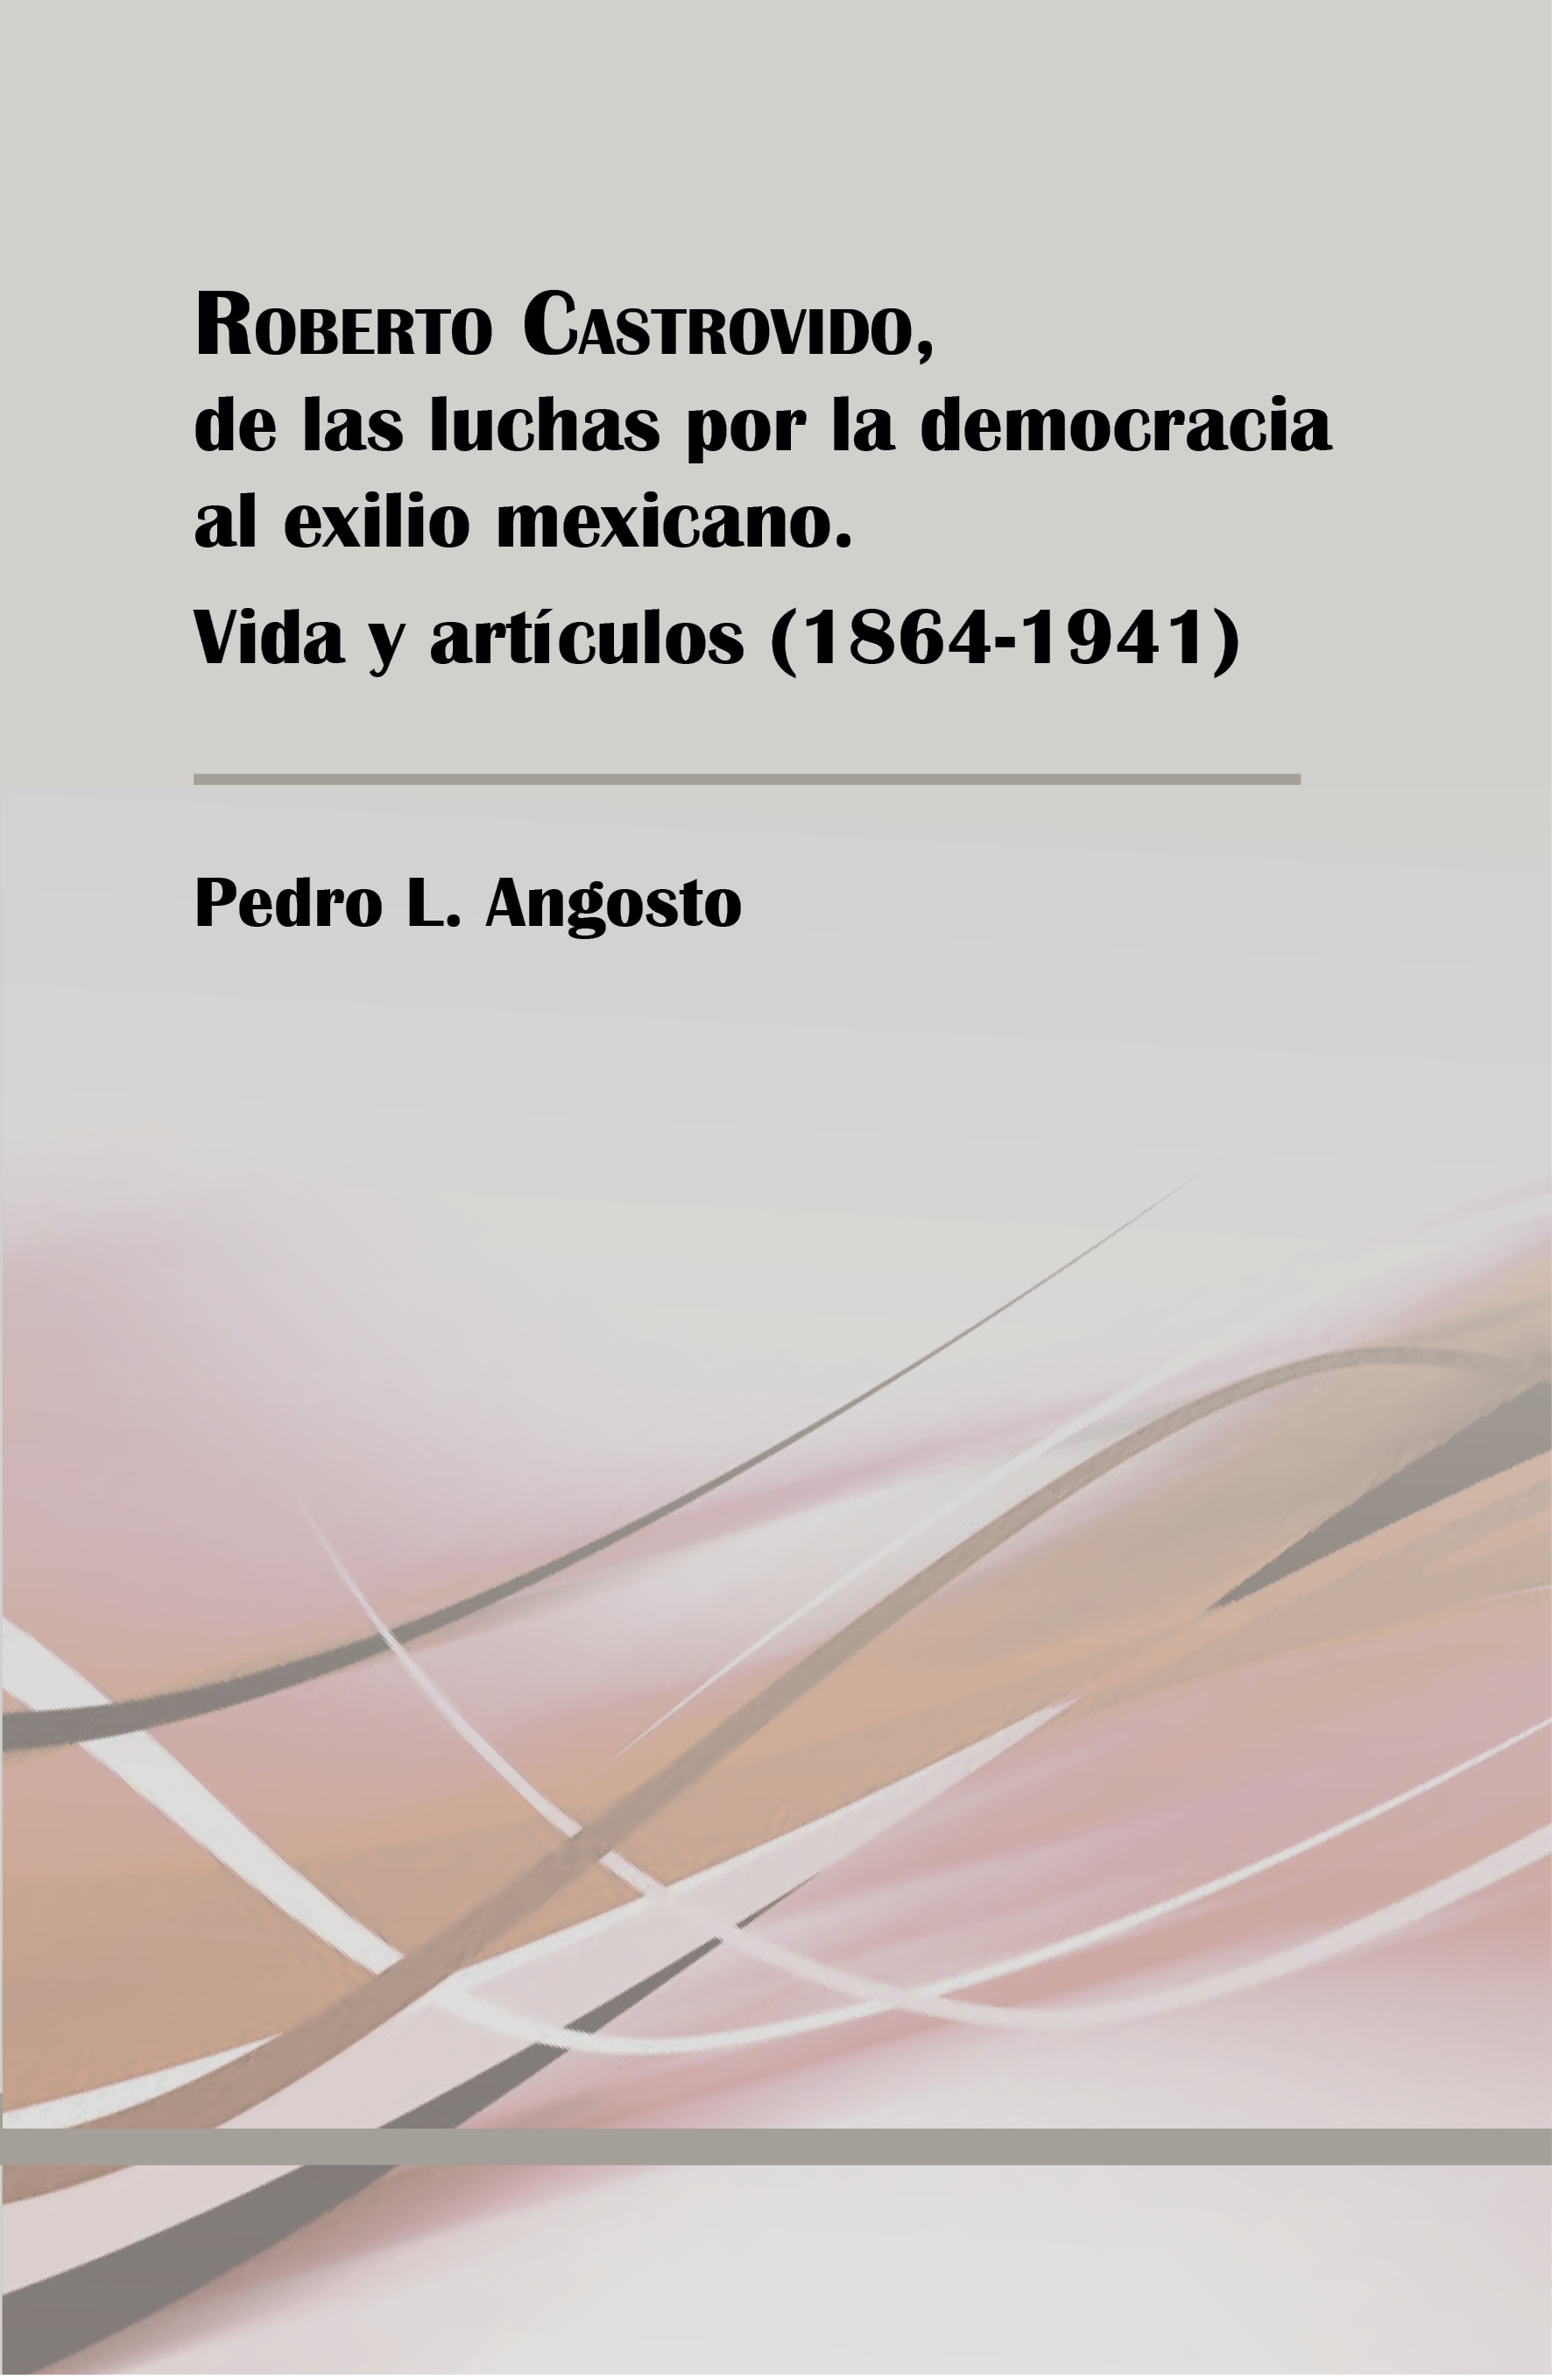 View details of ROBERTO CASTROVIDO, DE LAS LUCHAS POR LA DEMOCRACIA AL EXILIO MEXICANO. VIDA Y ARTÍCULOS. 1864-1941